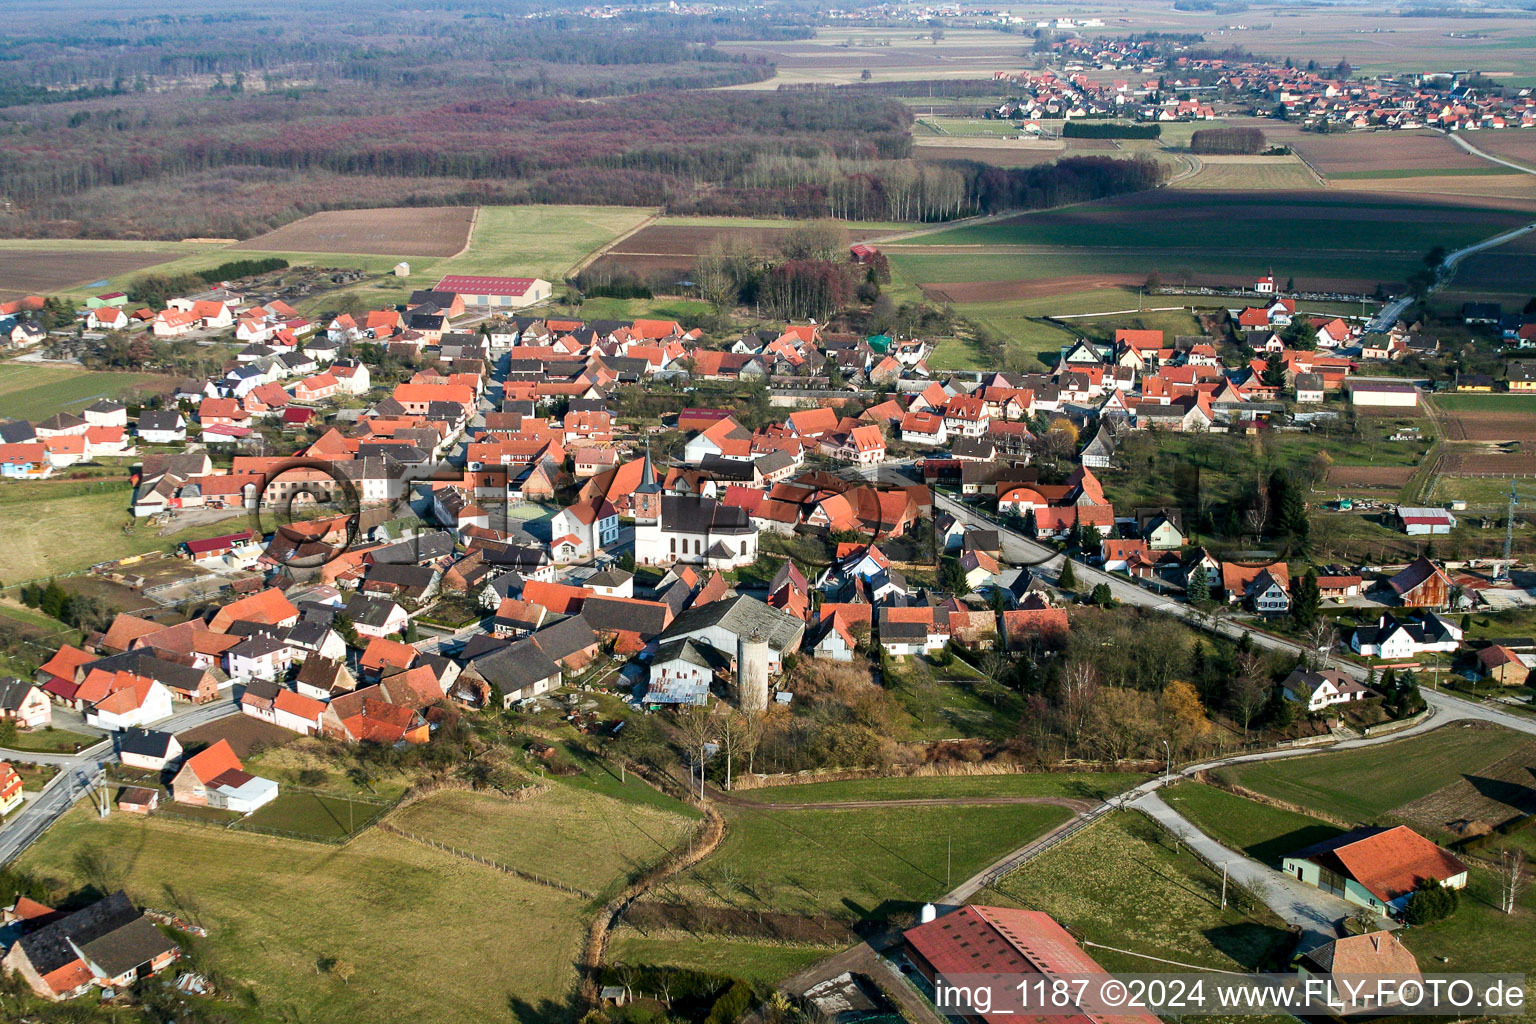 Vue aérienne de Champs agricoles et surfaces utilisables à Salmbach dans le département Bas Rhin, France